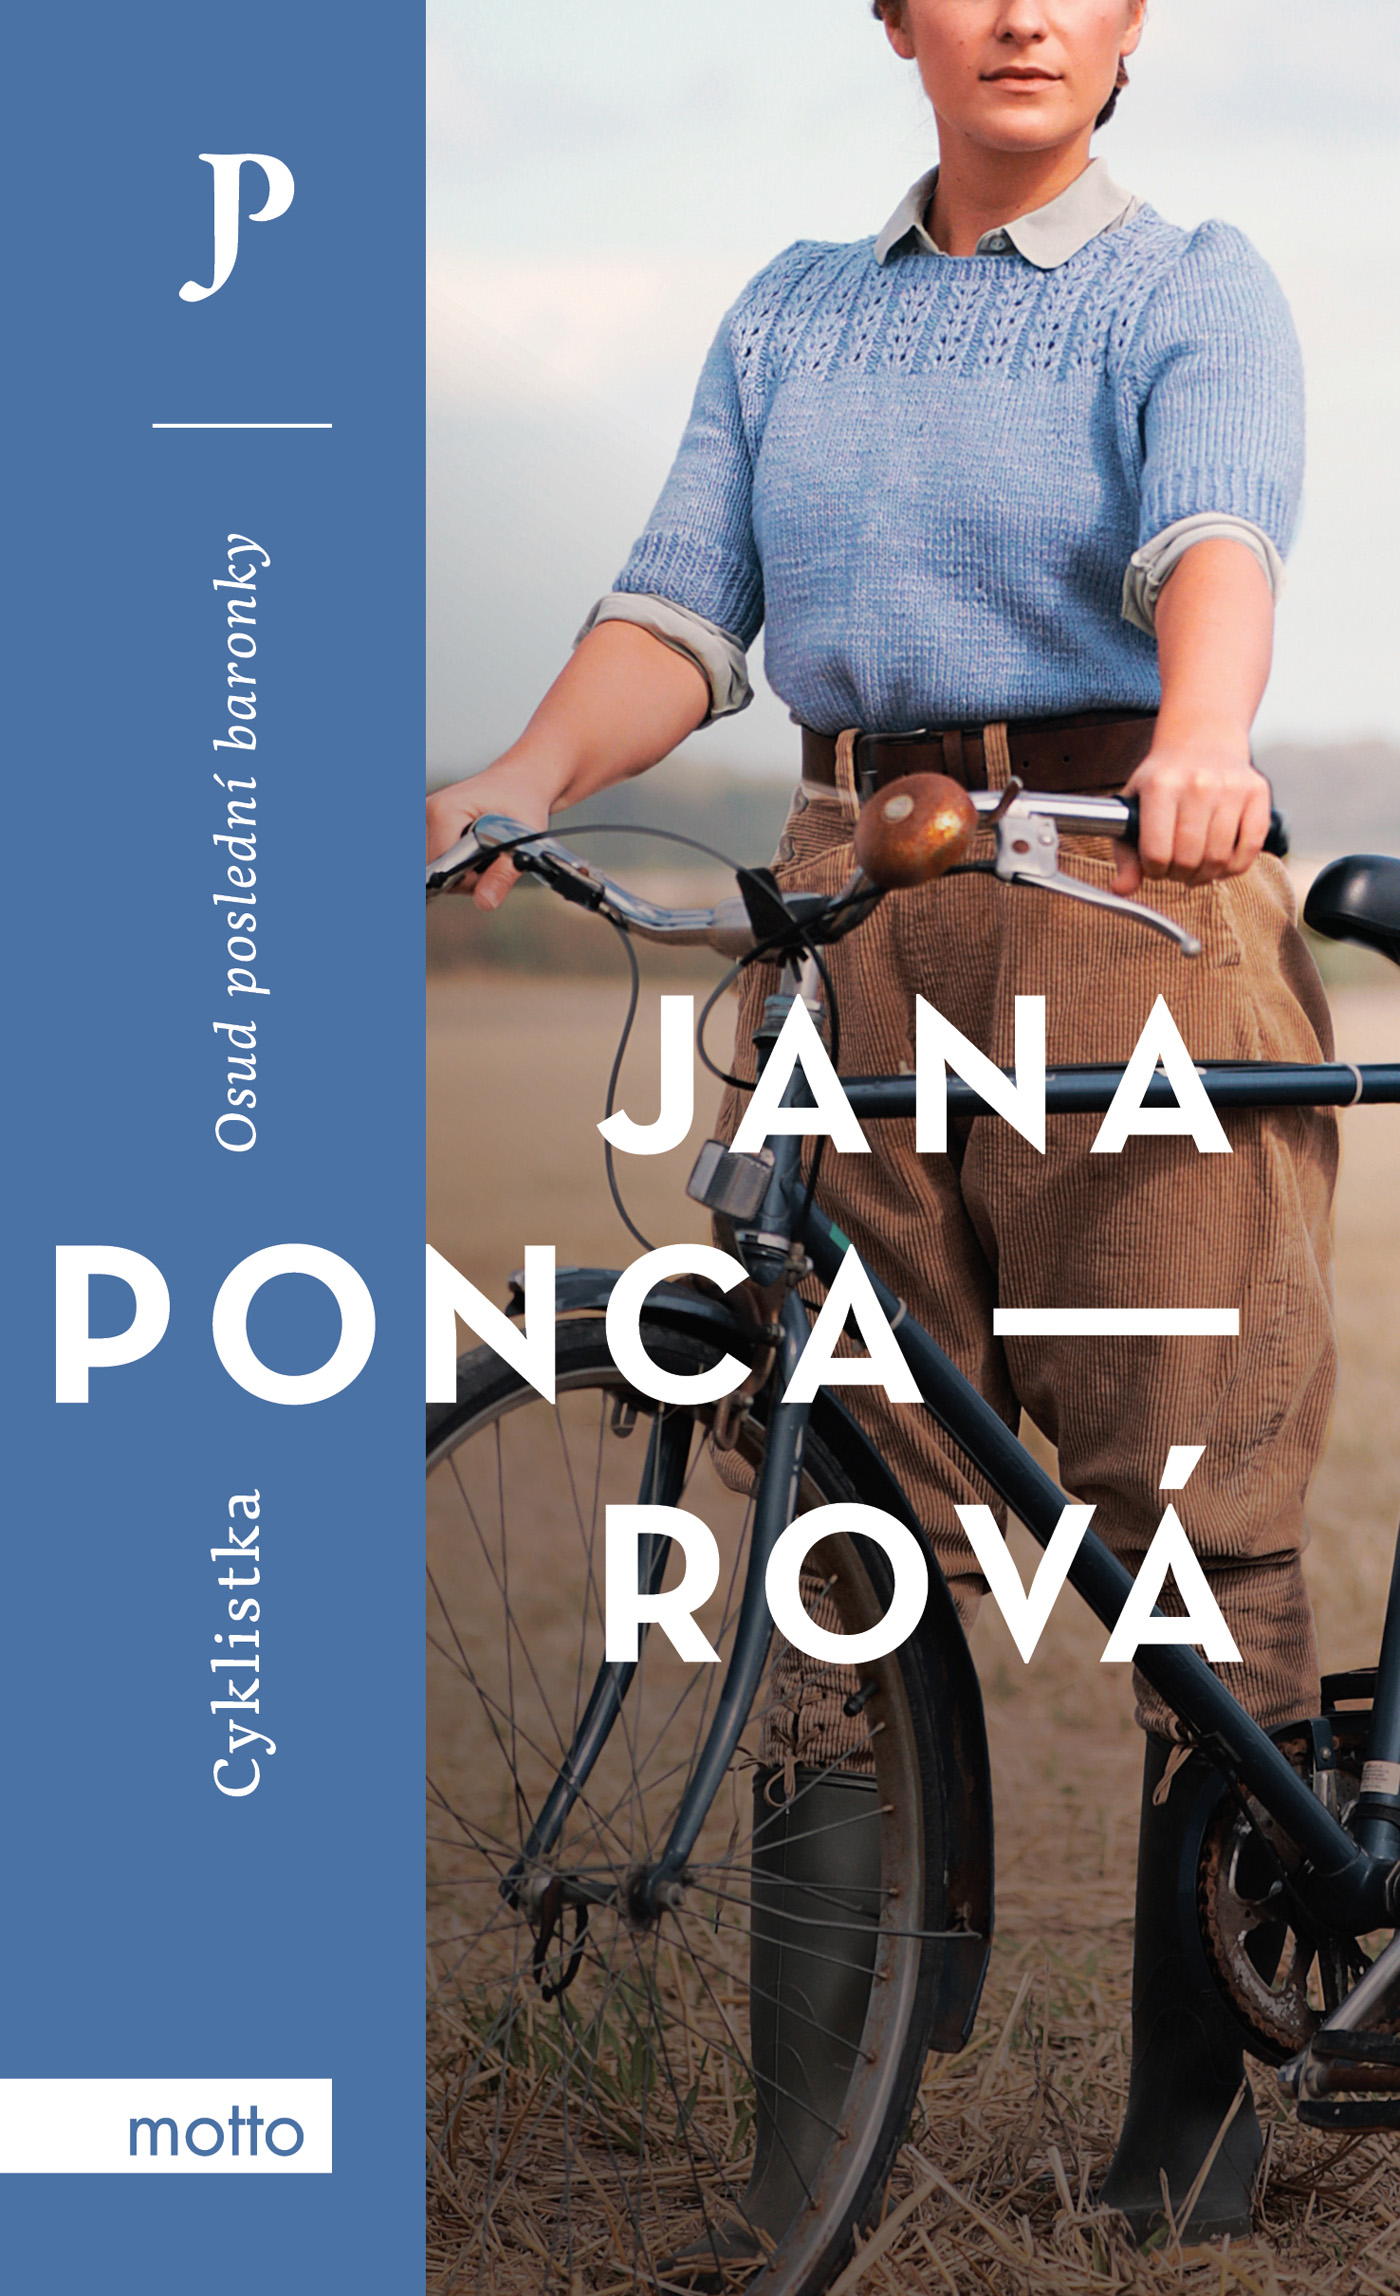 E-kniha Cyklistka - Jana Poncarová